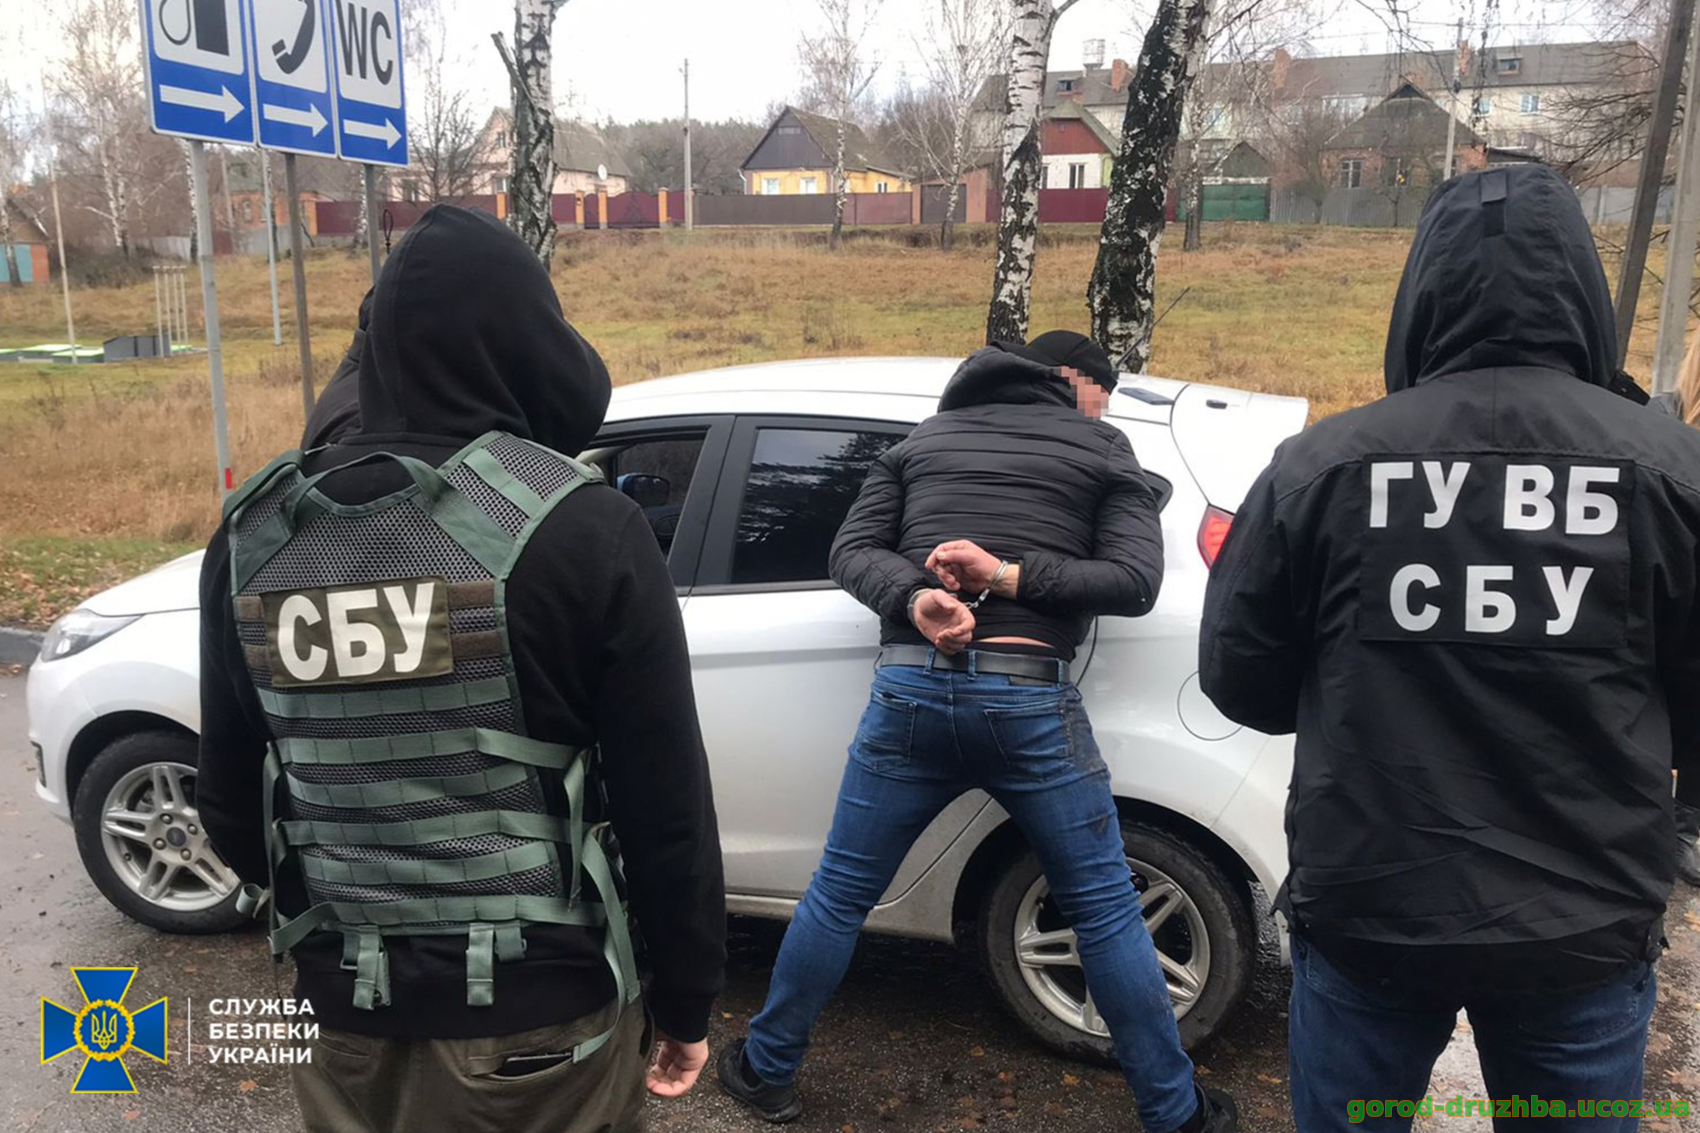 Служба безпеки України викрила злочинне угруповання, яке тероризувало мешканців Сумської області під виглядом співробітників СБУ